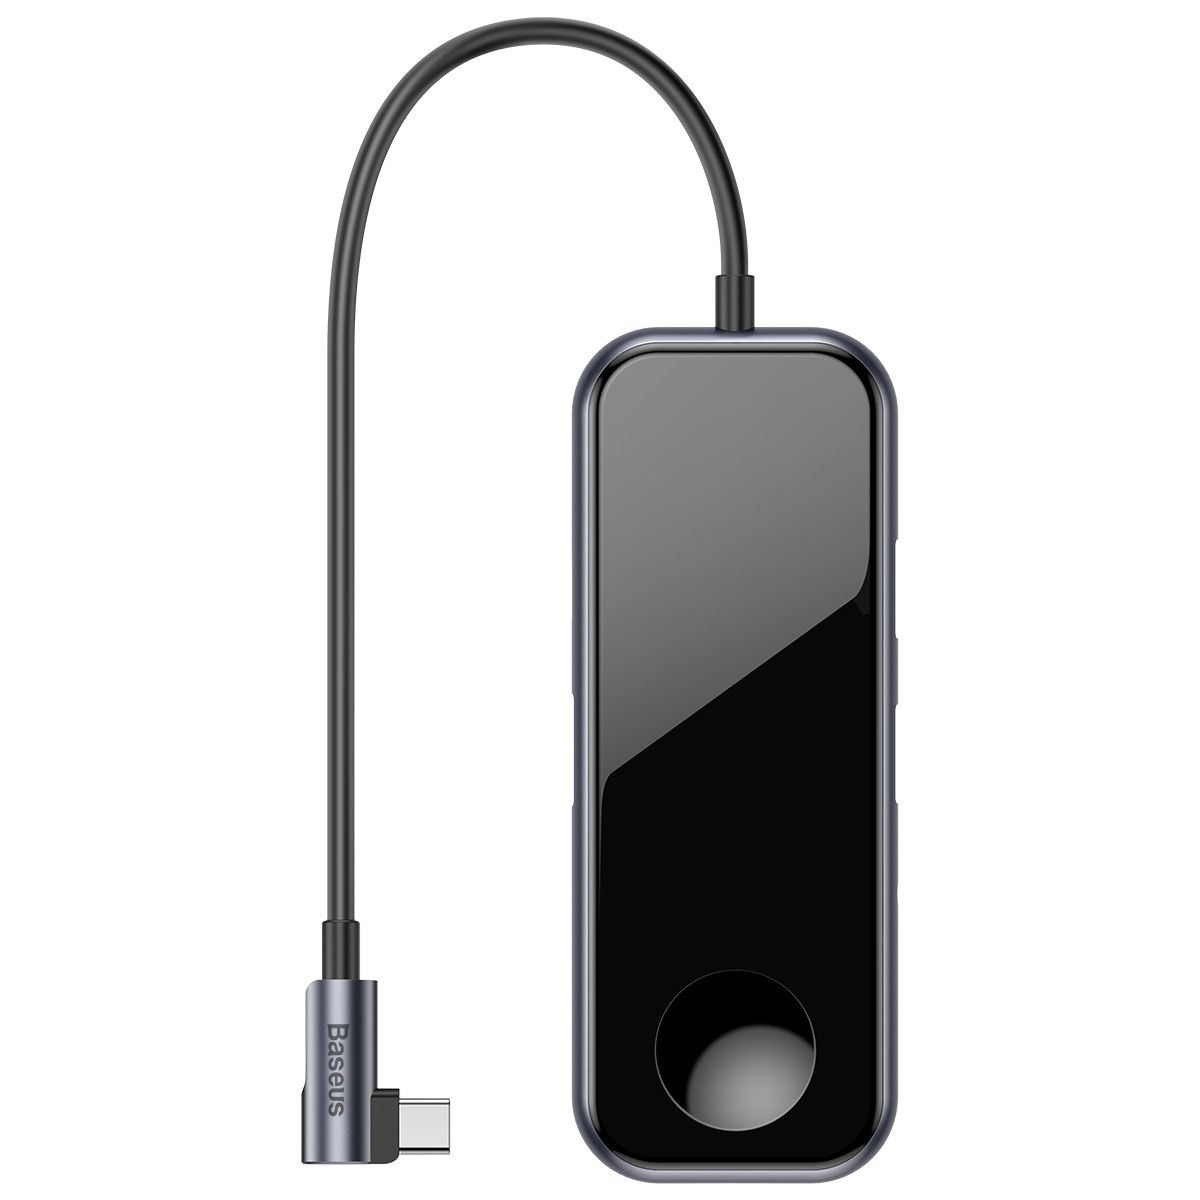 HUB USB-C Baseus com HDMI + USB 3.0 + P2 com Carregamento sem Fio para Apple Watch